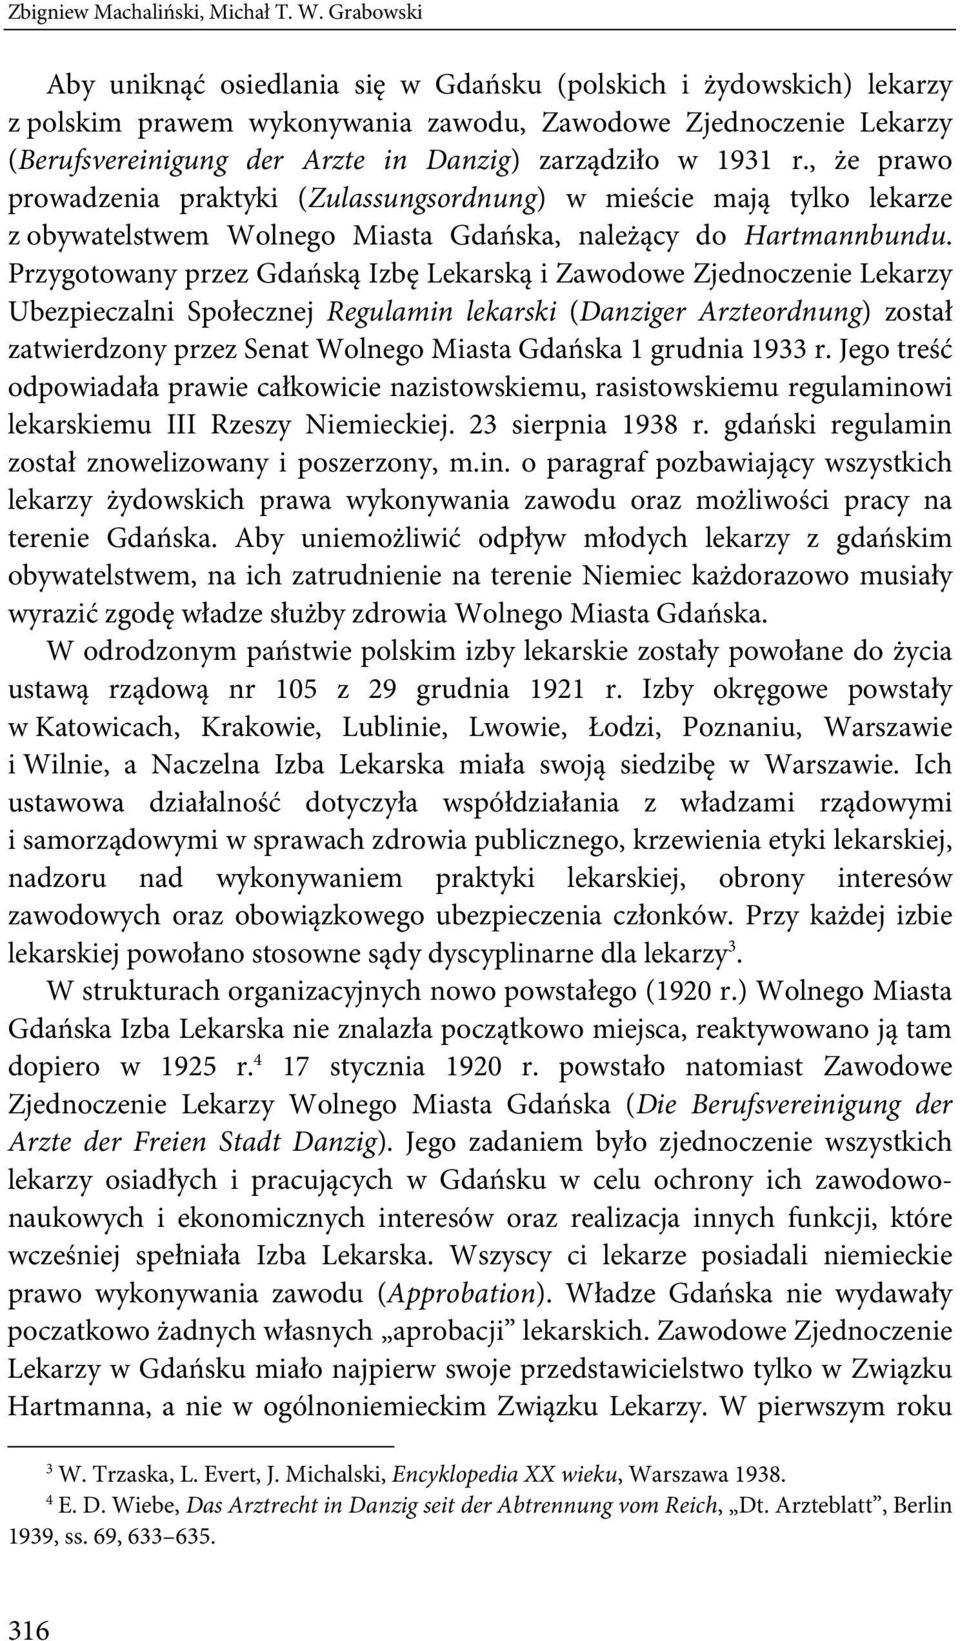 1931 r., że prawo prowadzenia praktyki (Zulassungsordnung) w mieście mają tylko lekarze z obywatelstwem Wolnego Miasta Gdańska, należący do Hartmannbundu.